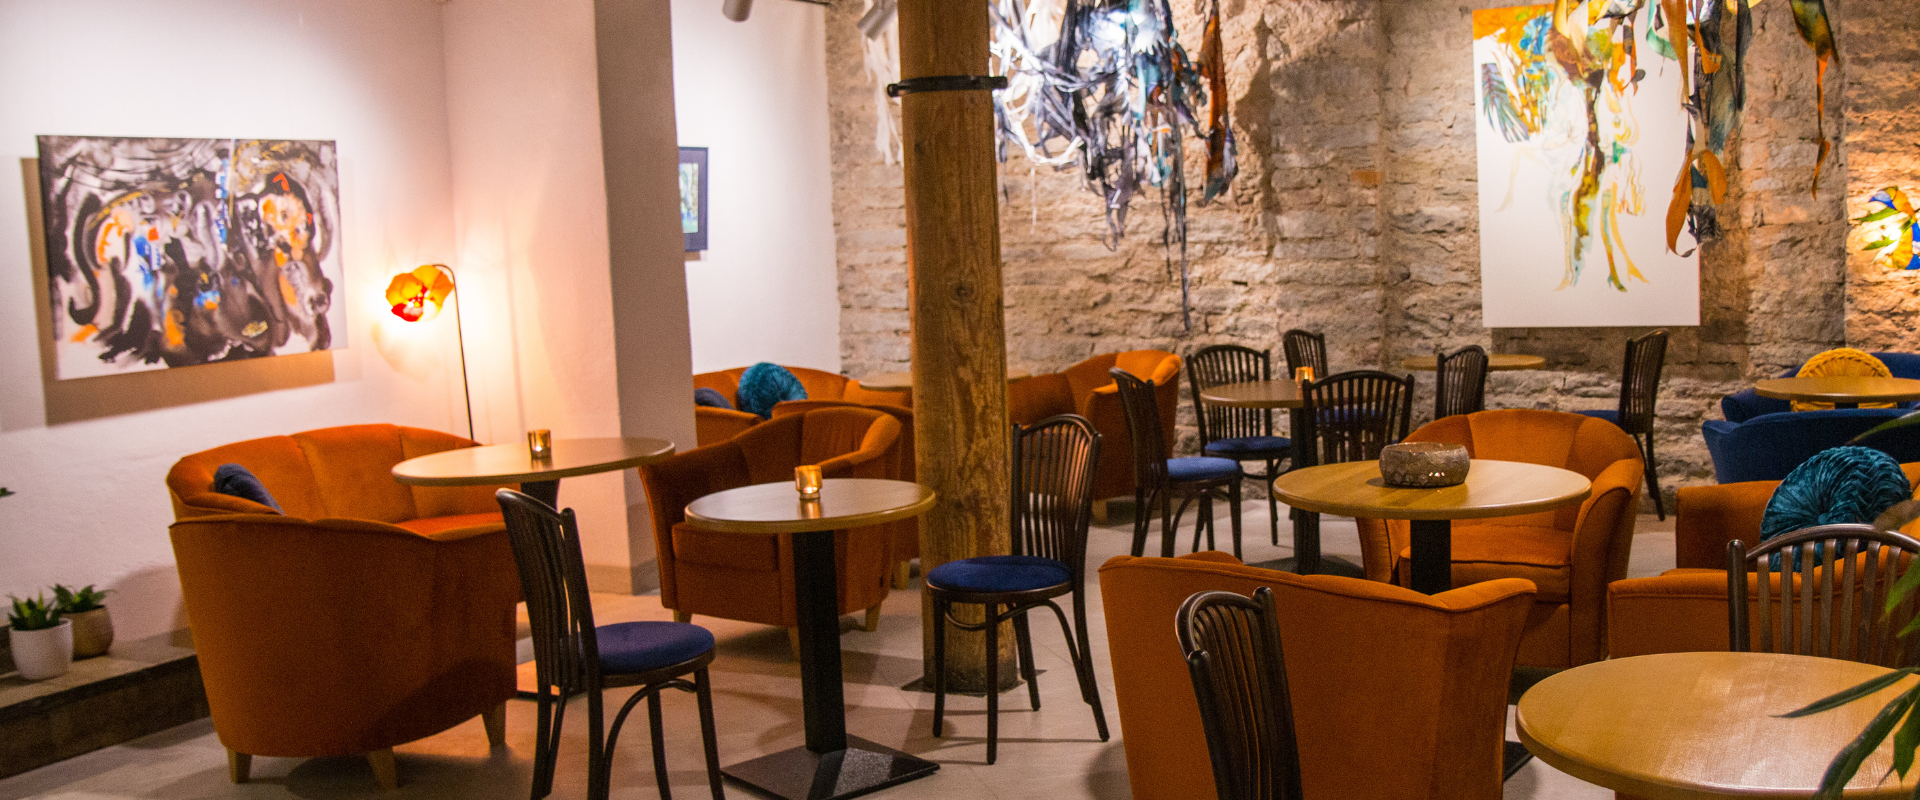 Kunstcafé Lummus (dt. Faszination) in der Altstadt von Tallinn